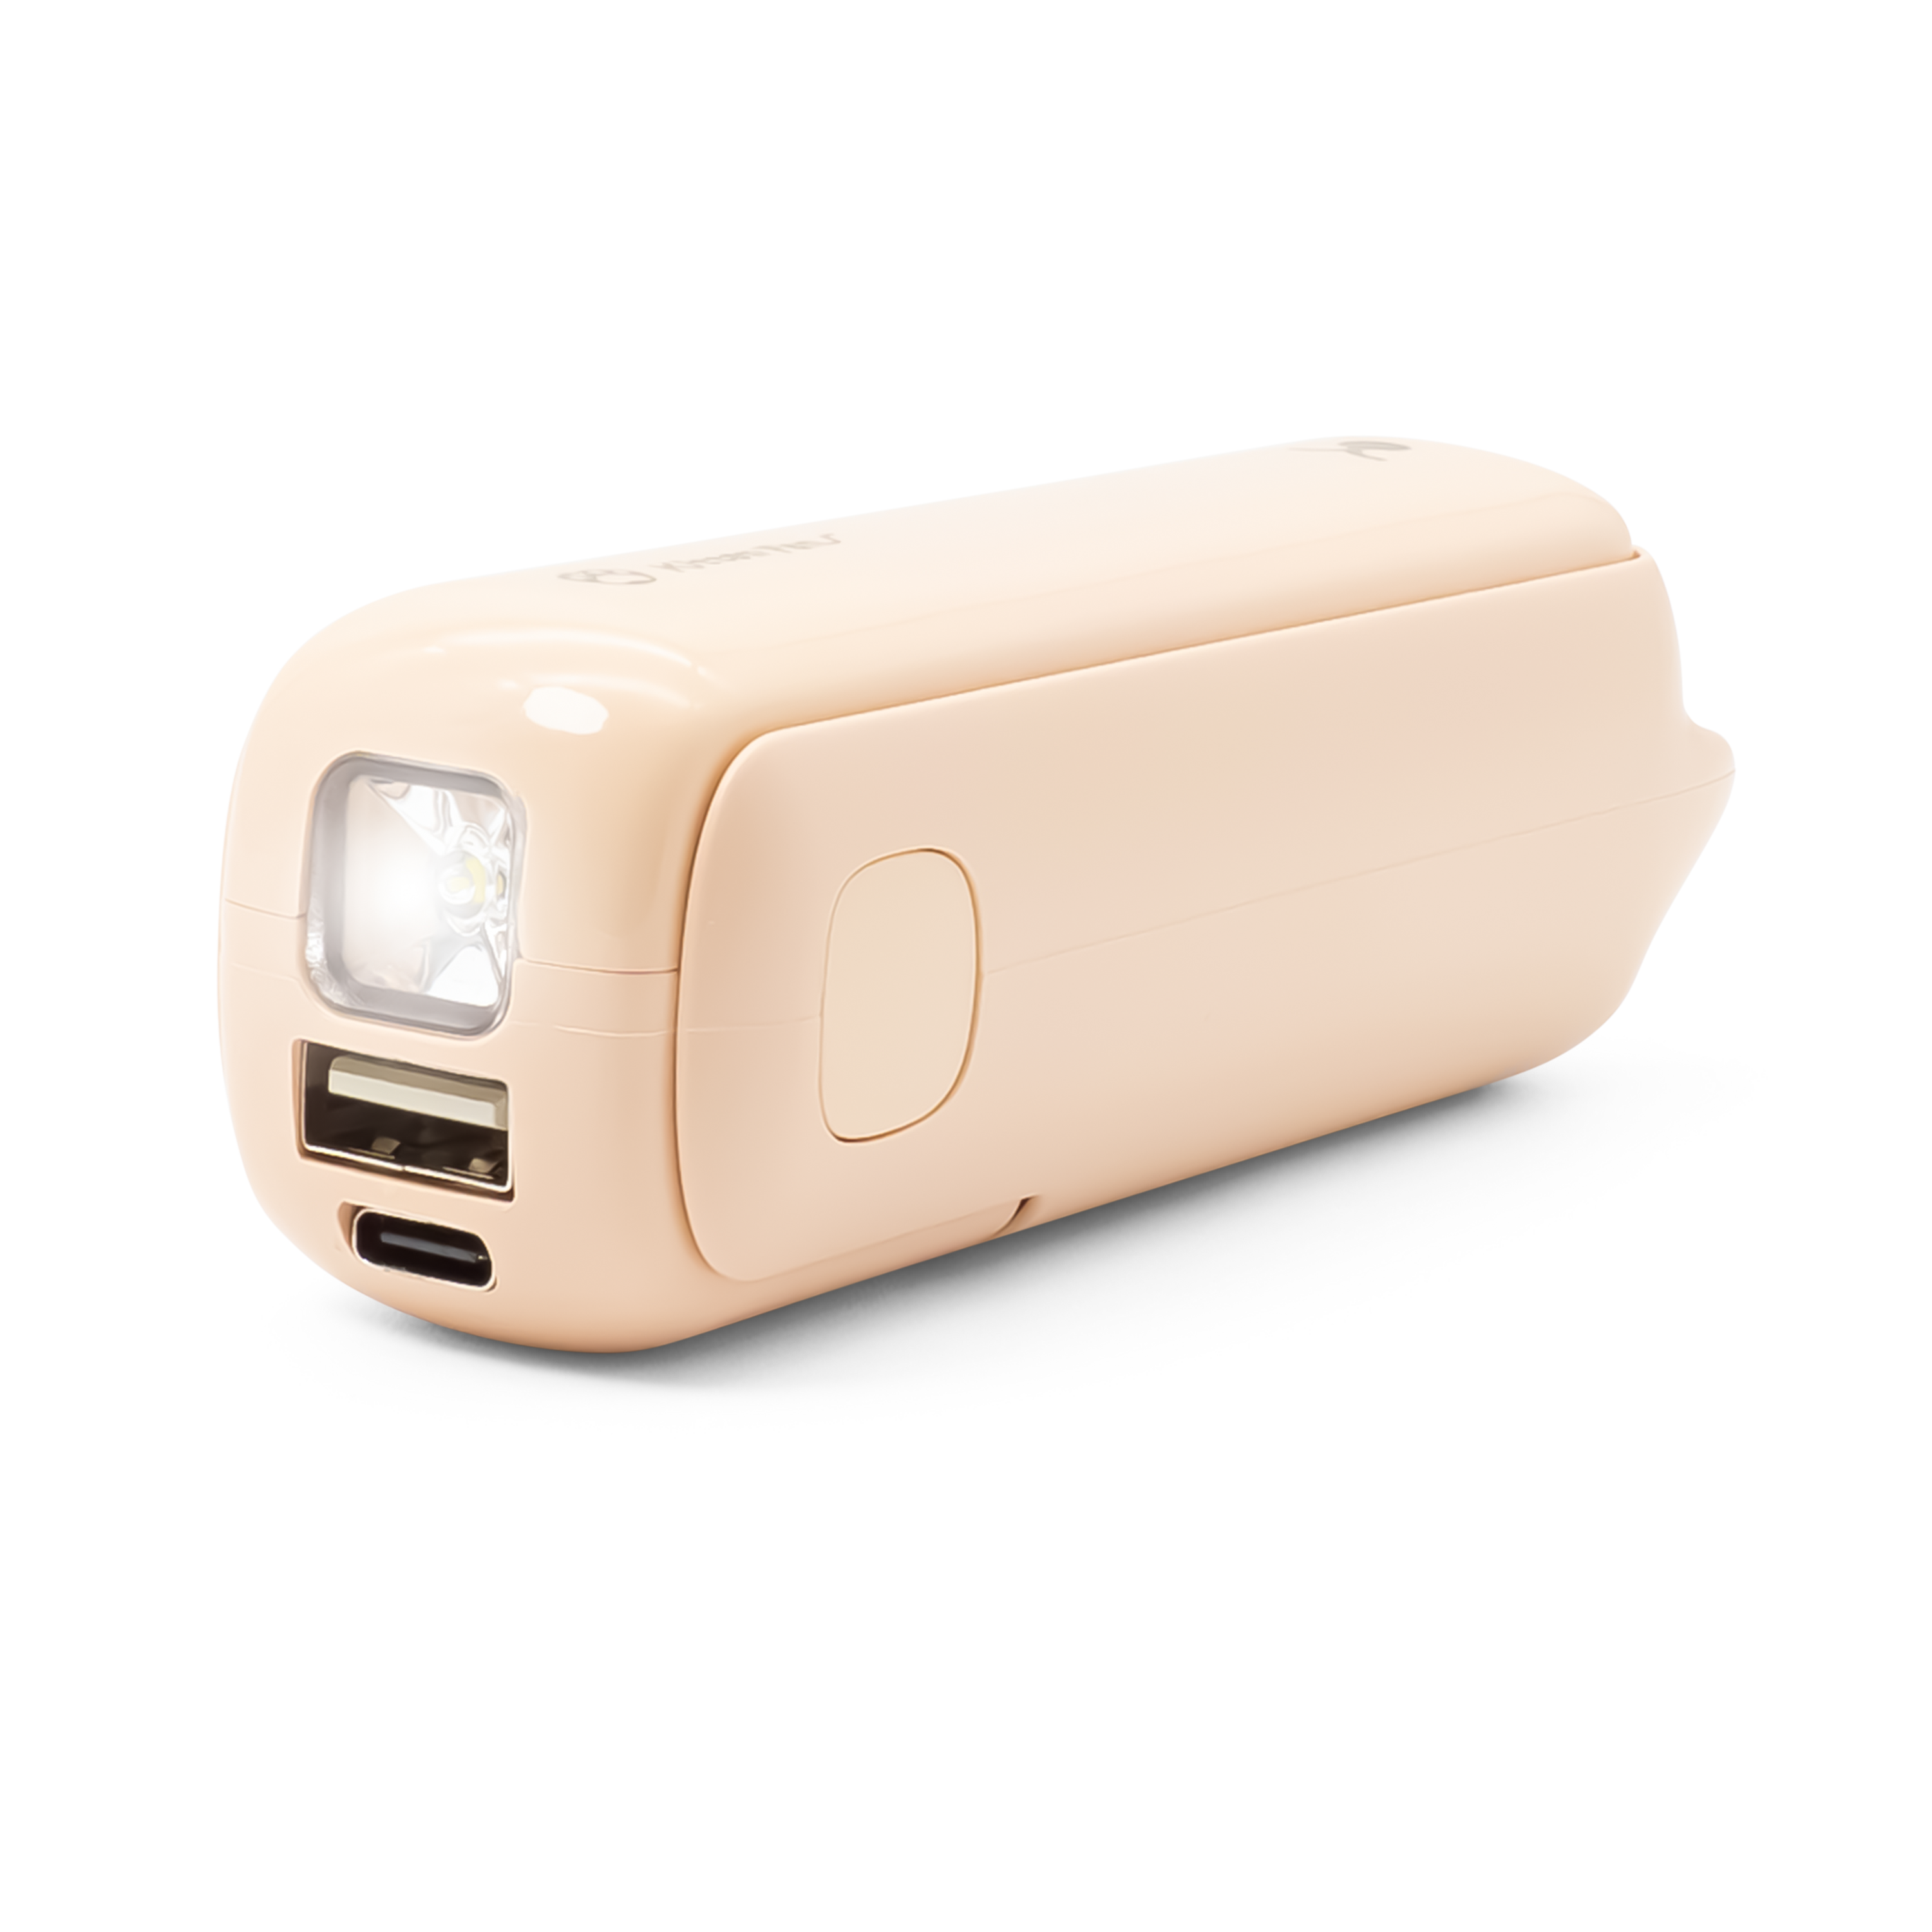 3in1-Akku-Camping-Ventilator, LED-Licht, USB-Powerbank, ¥ 16 cm, 130 lm -  Ihr Elektronik-Versand in der Schweiz